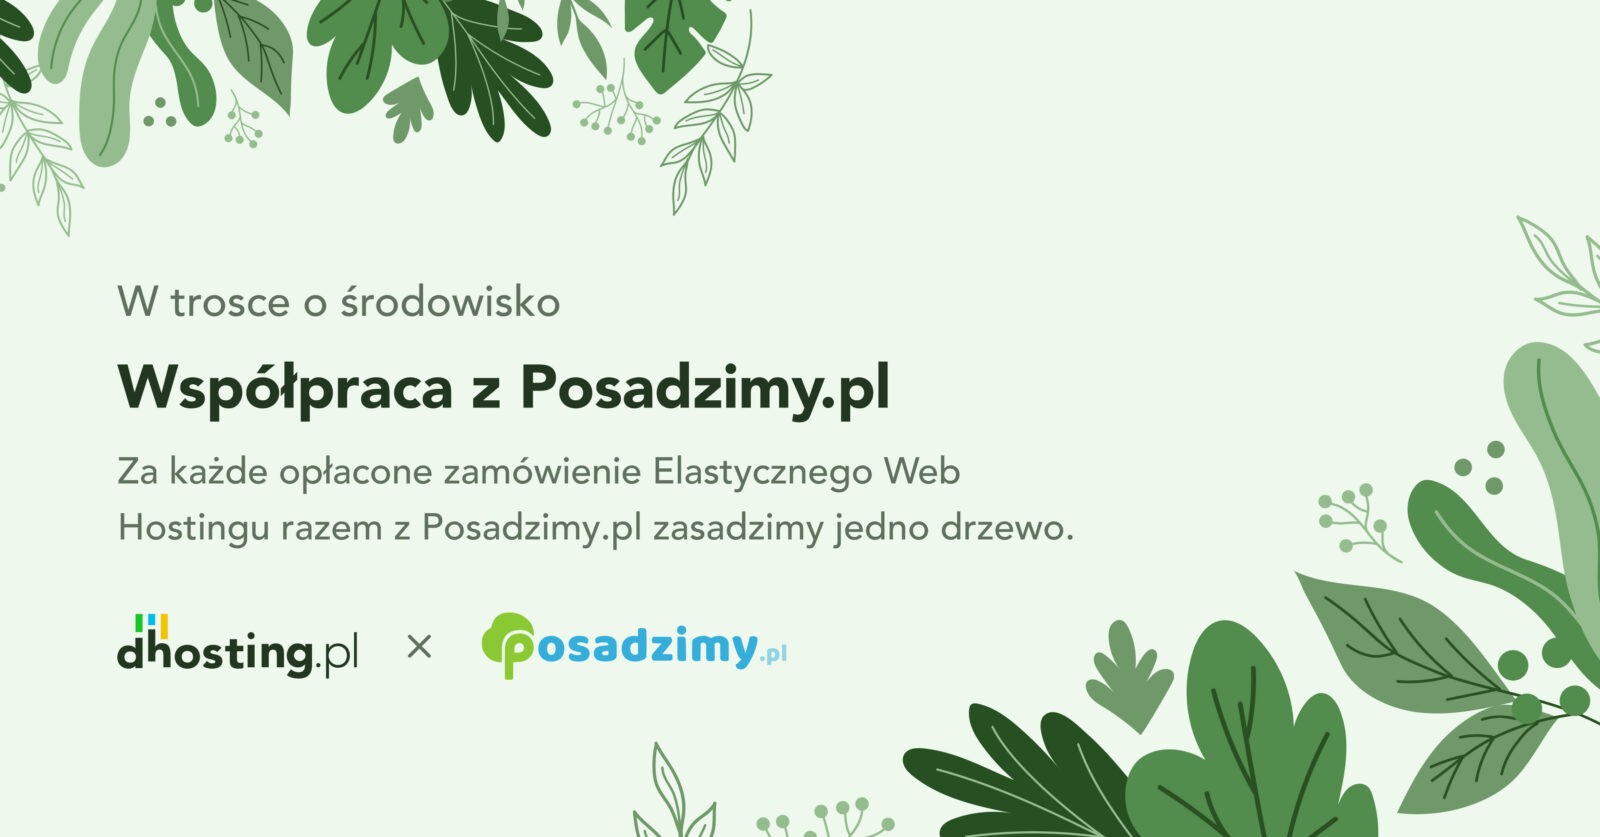 Dhosting.pl i Posadzimy.pl – współpraca dla zalesienia Polski